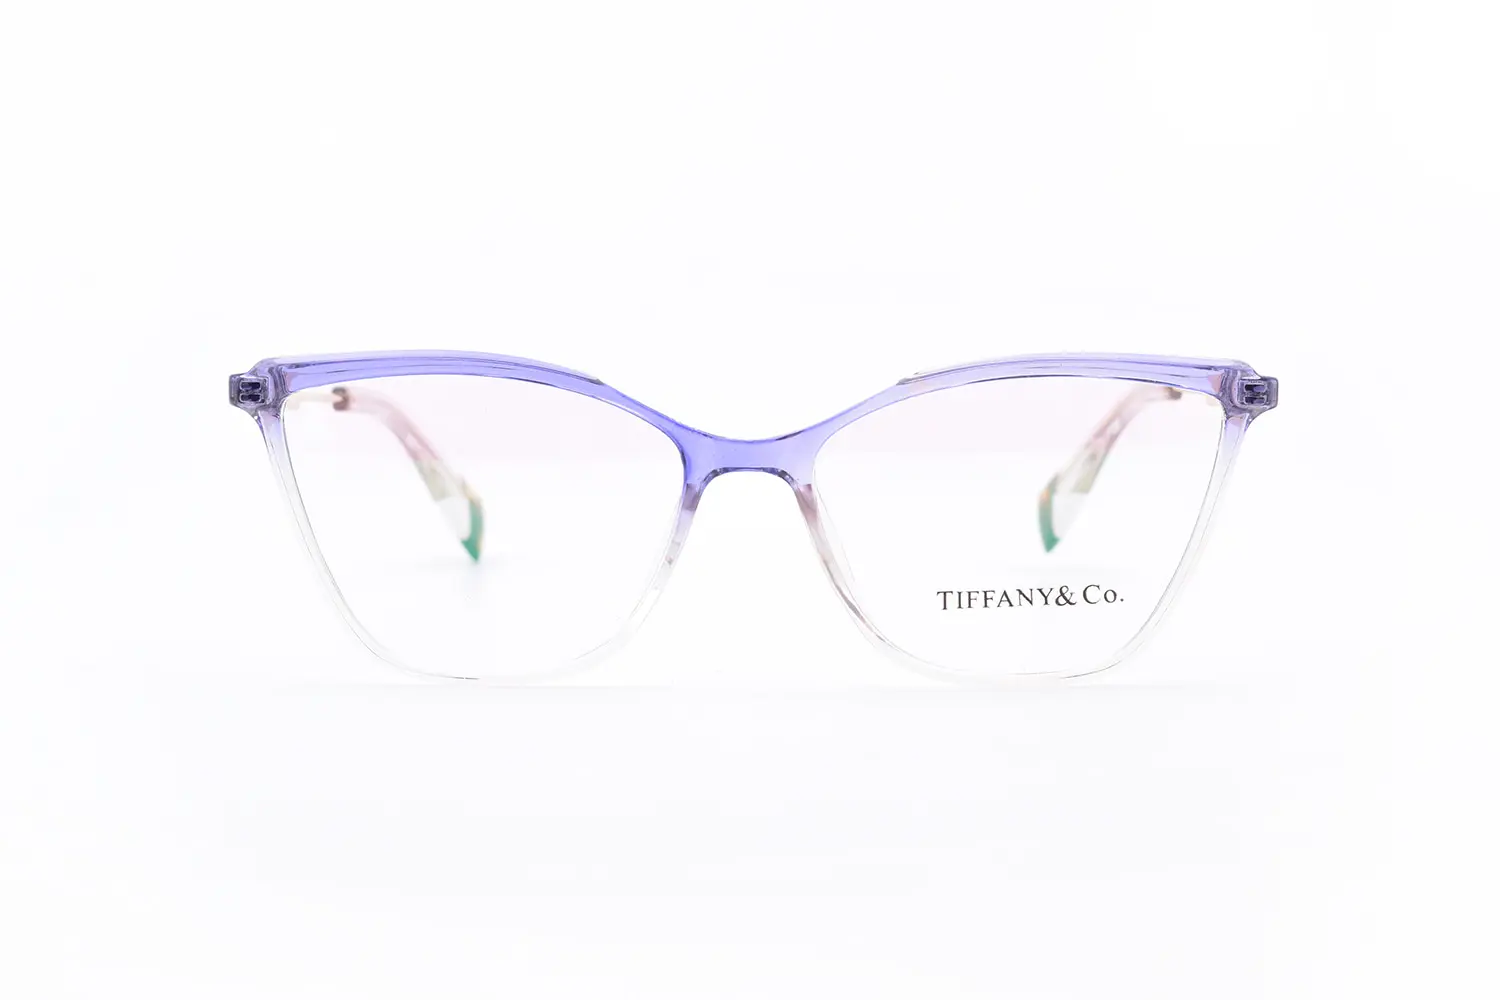 قیمت عینک طبی زنانه Tiffany & co t867 c6